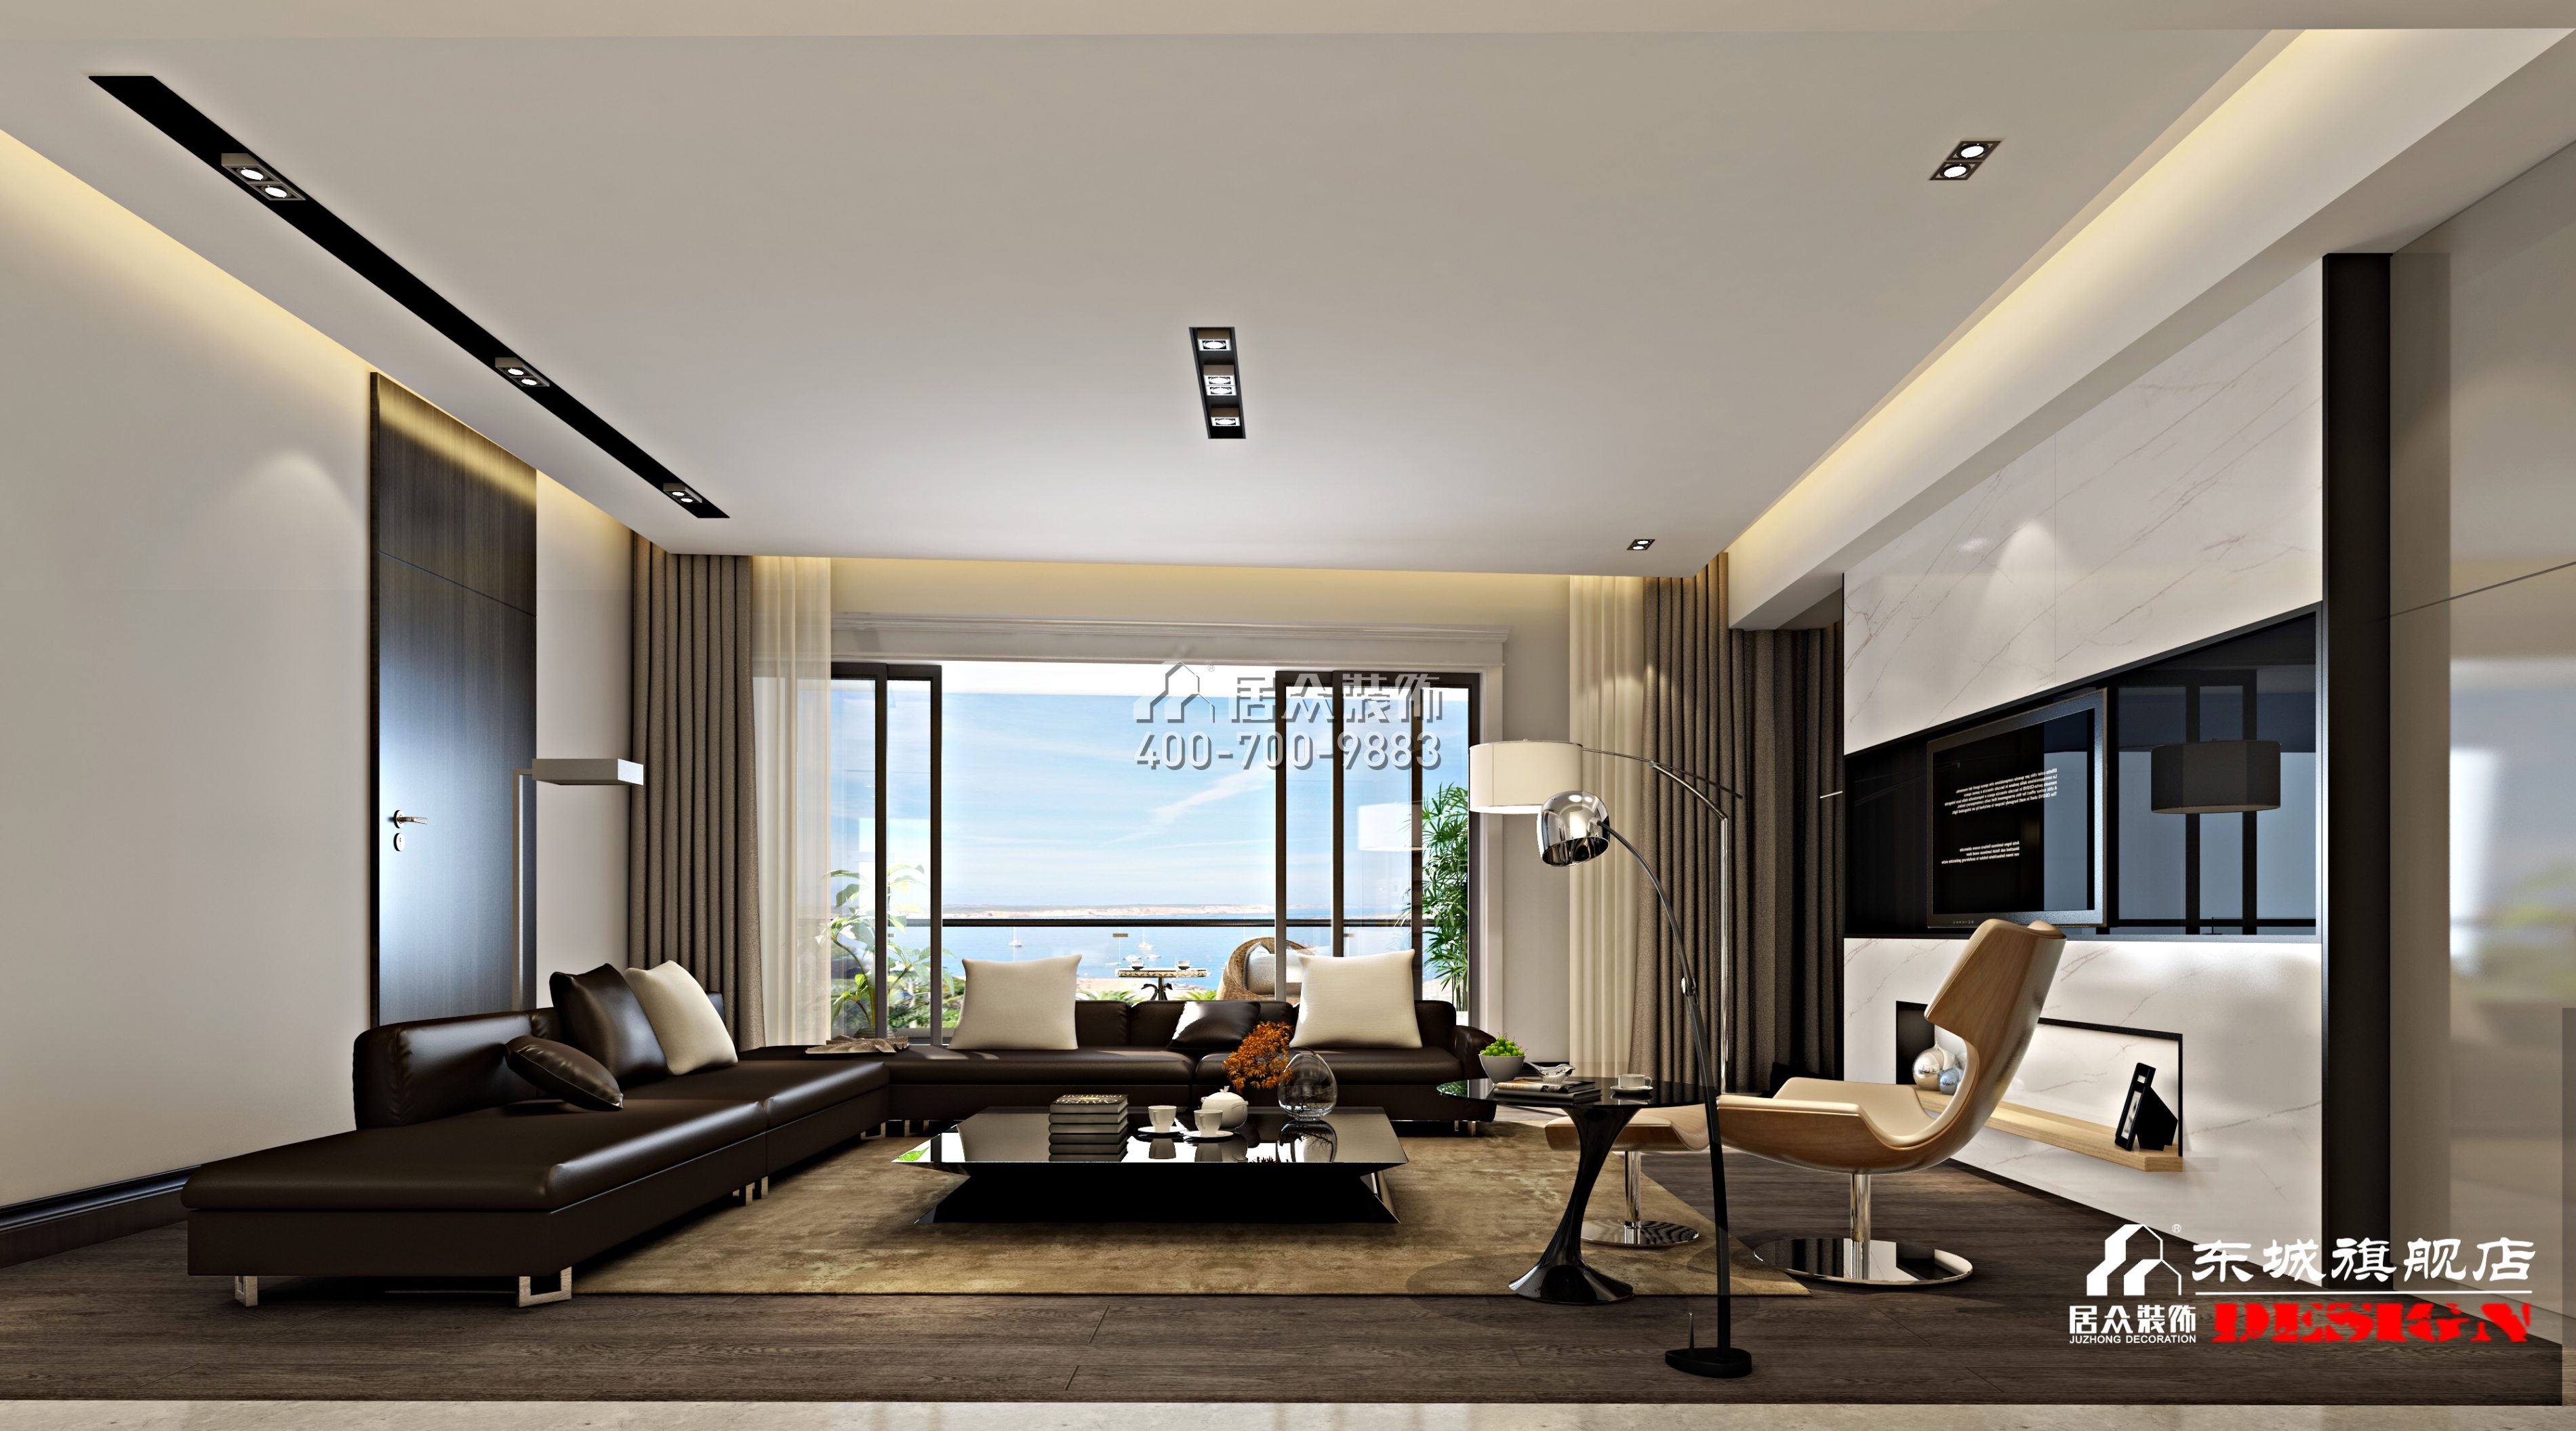 北辰定江洋180平方米現代簡約風格平層戶型客廳裝修效果圖